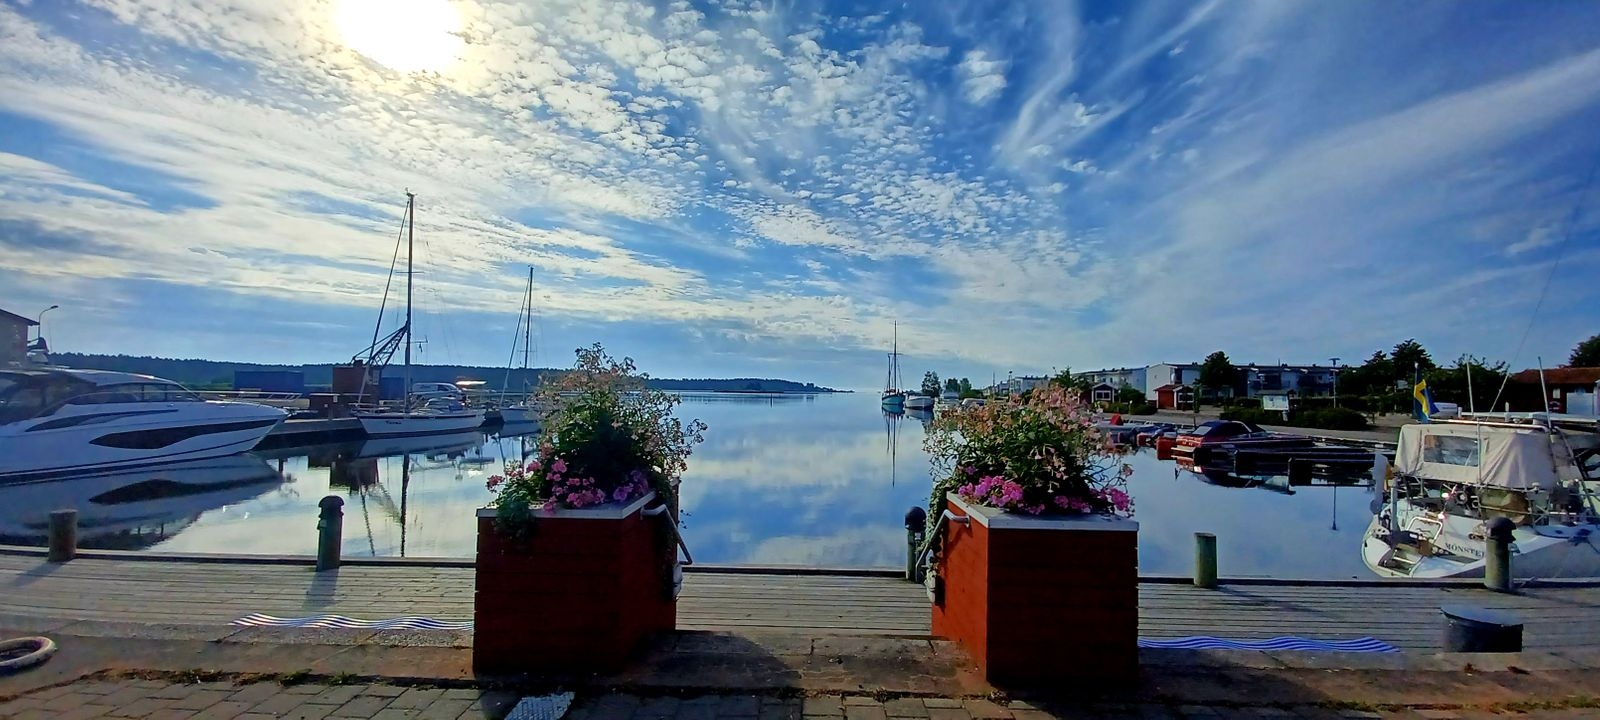 "En fin morgon från hamnen i Mönsterås", hälsar Anders Rydan Rydqvist.